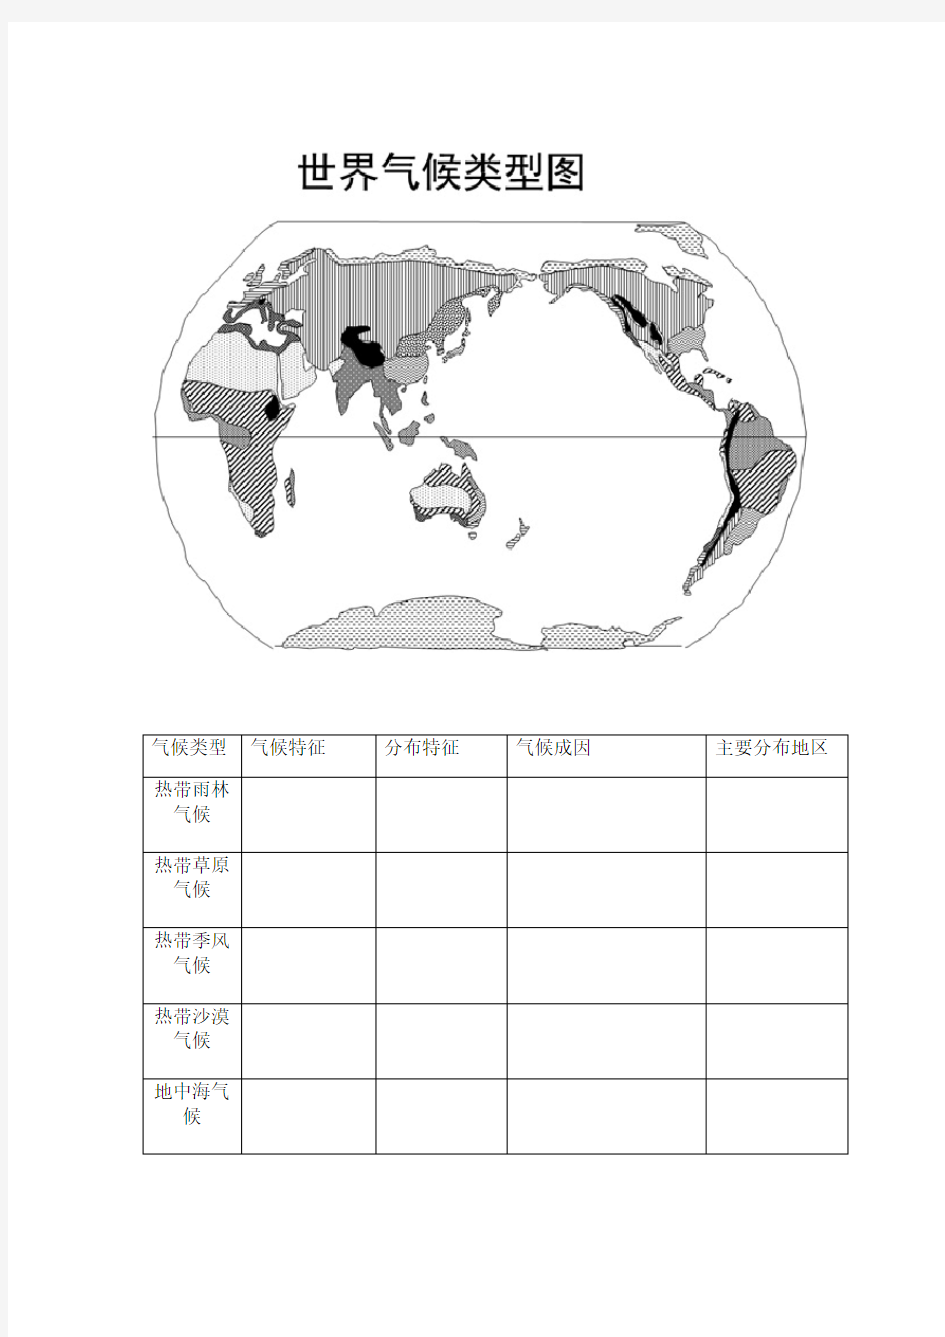 气候类型特点分布空白图填图